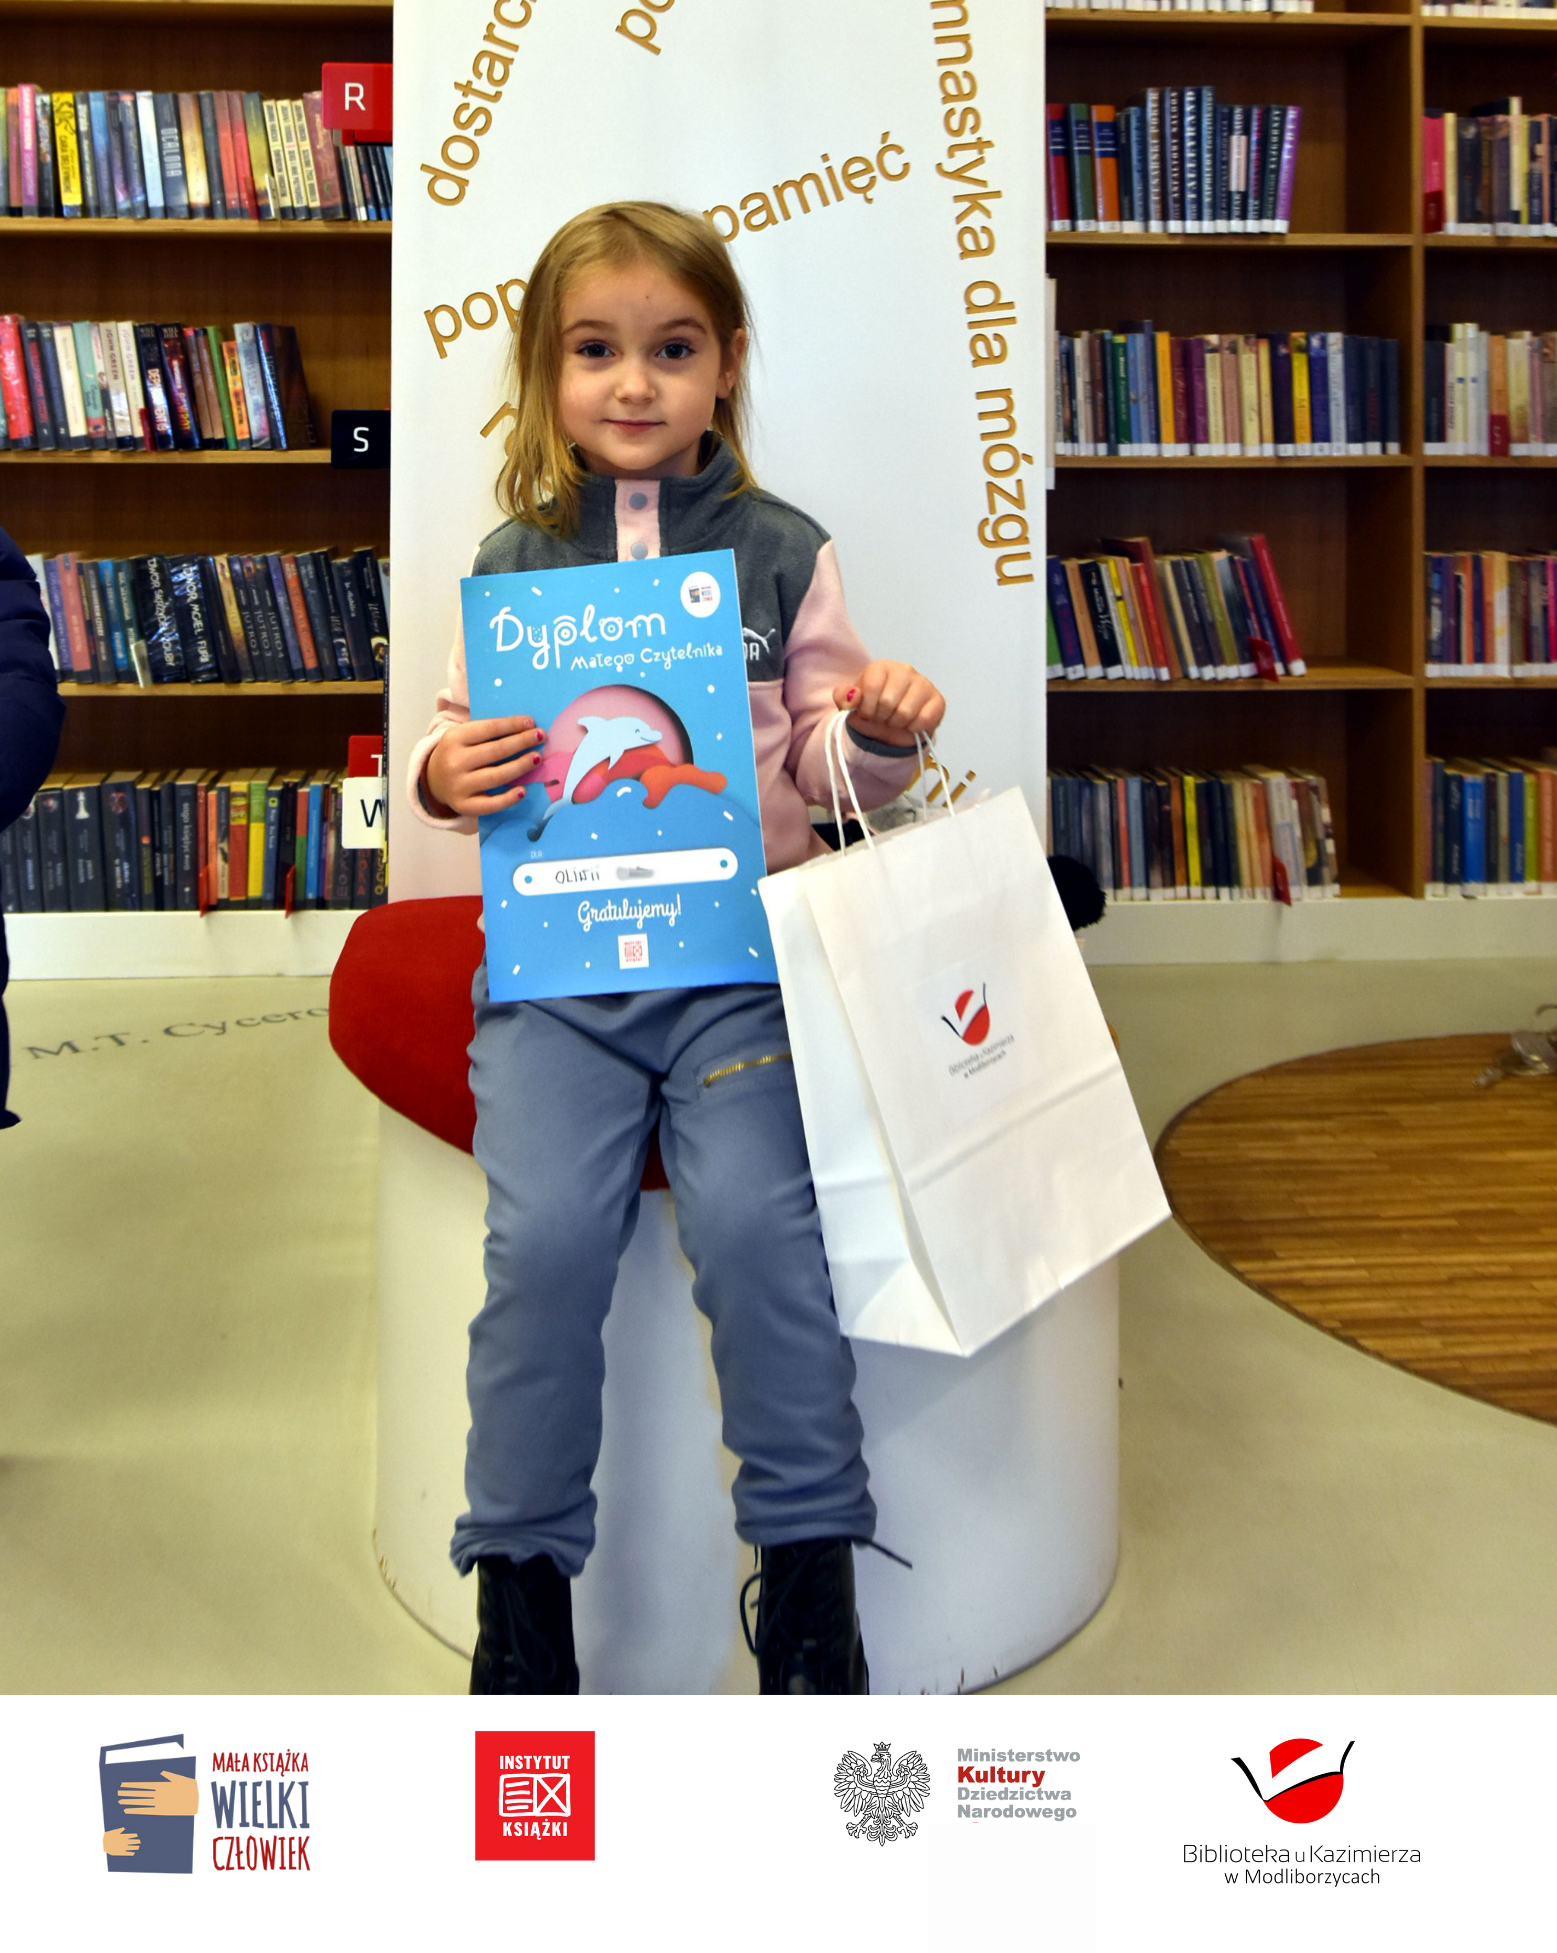 Oliwia uczestniczyła w projekcie @Mała książka - wielki człowiek i za uzbieranie 10 naklejek na karcie Małego Czytelnika otrzymała dyplom i mały upominek od naszej biblioteki.